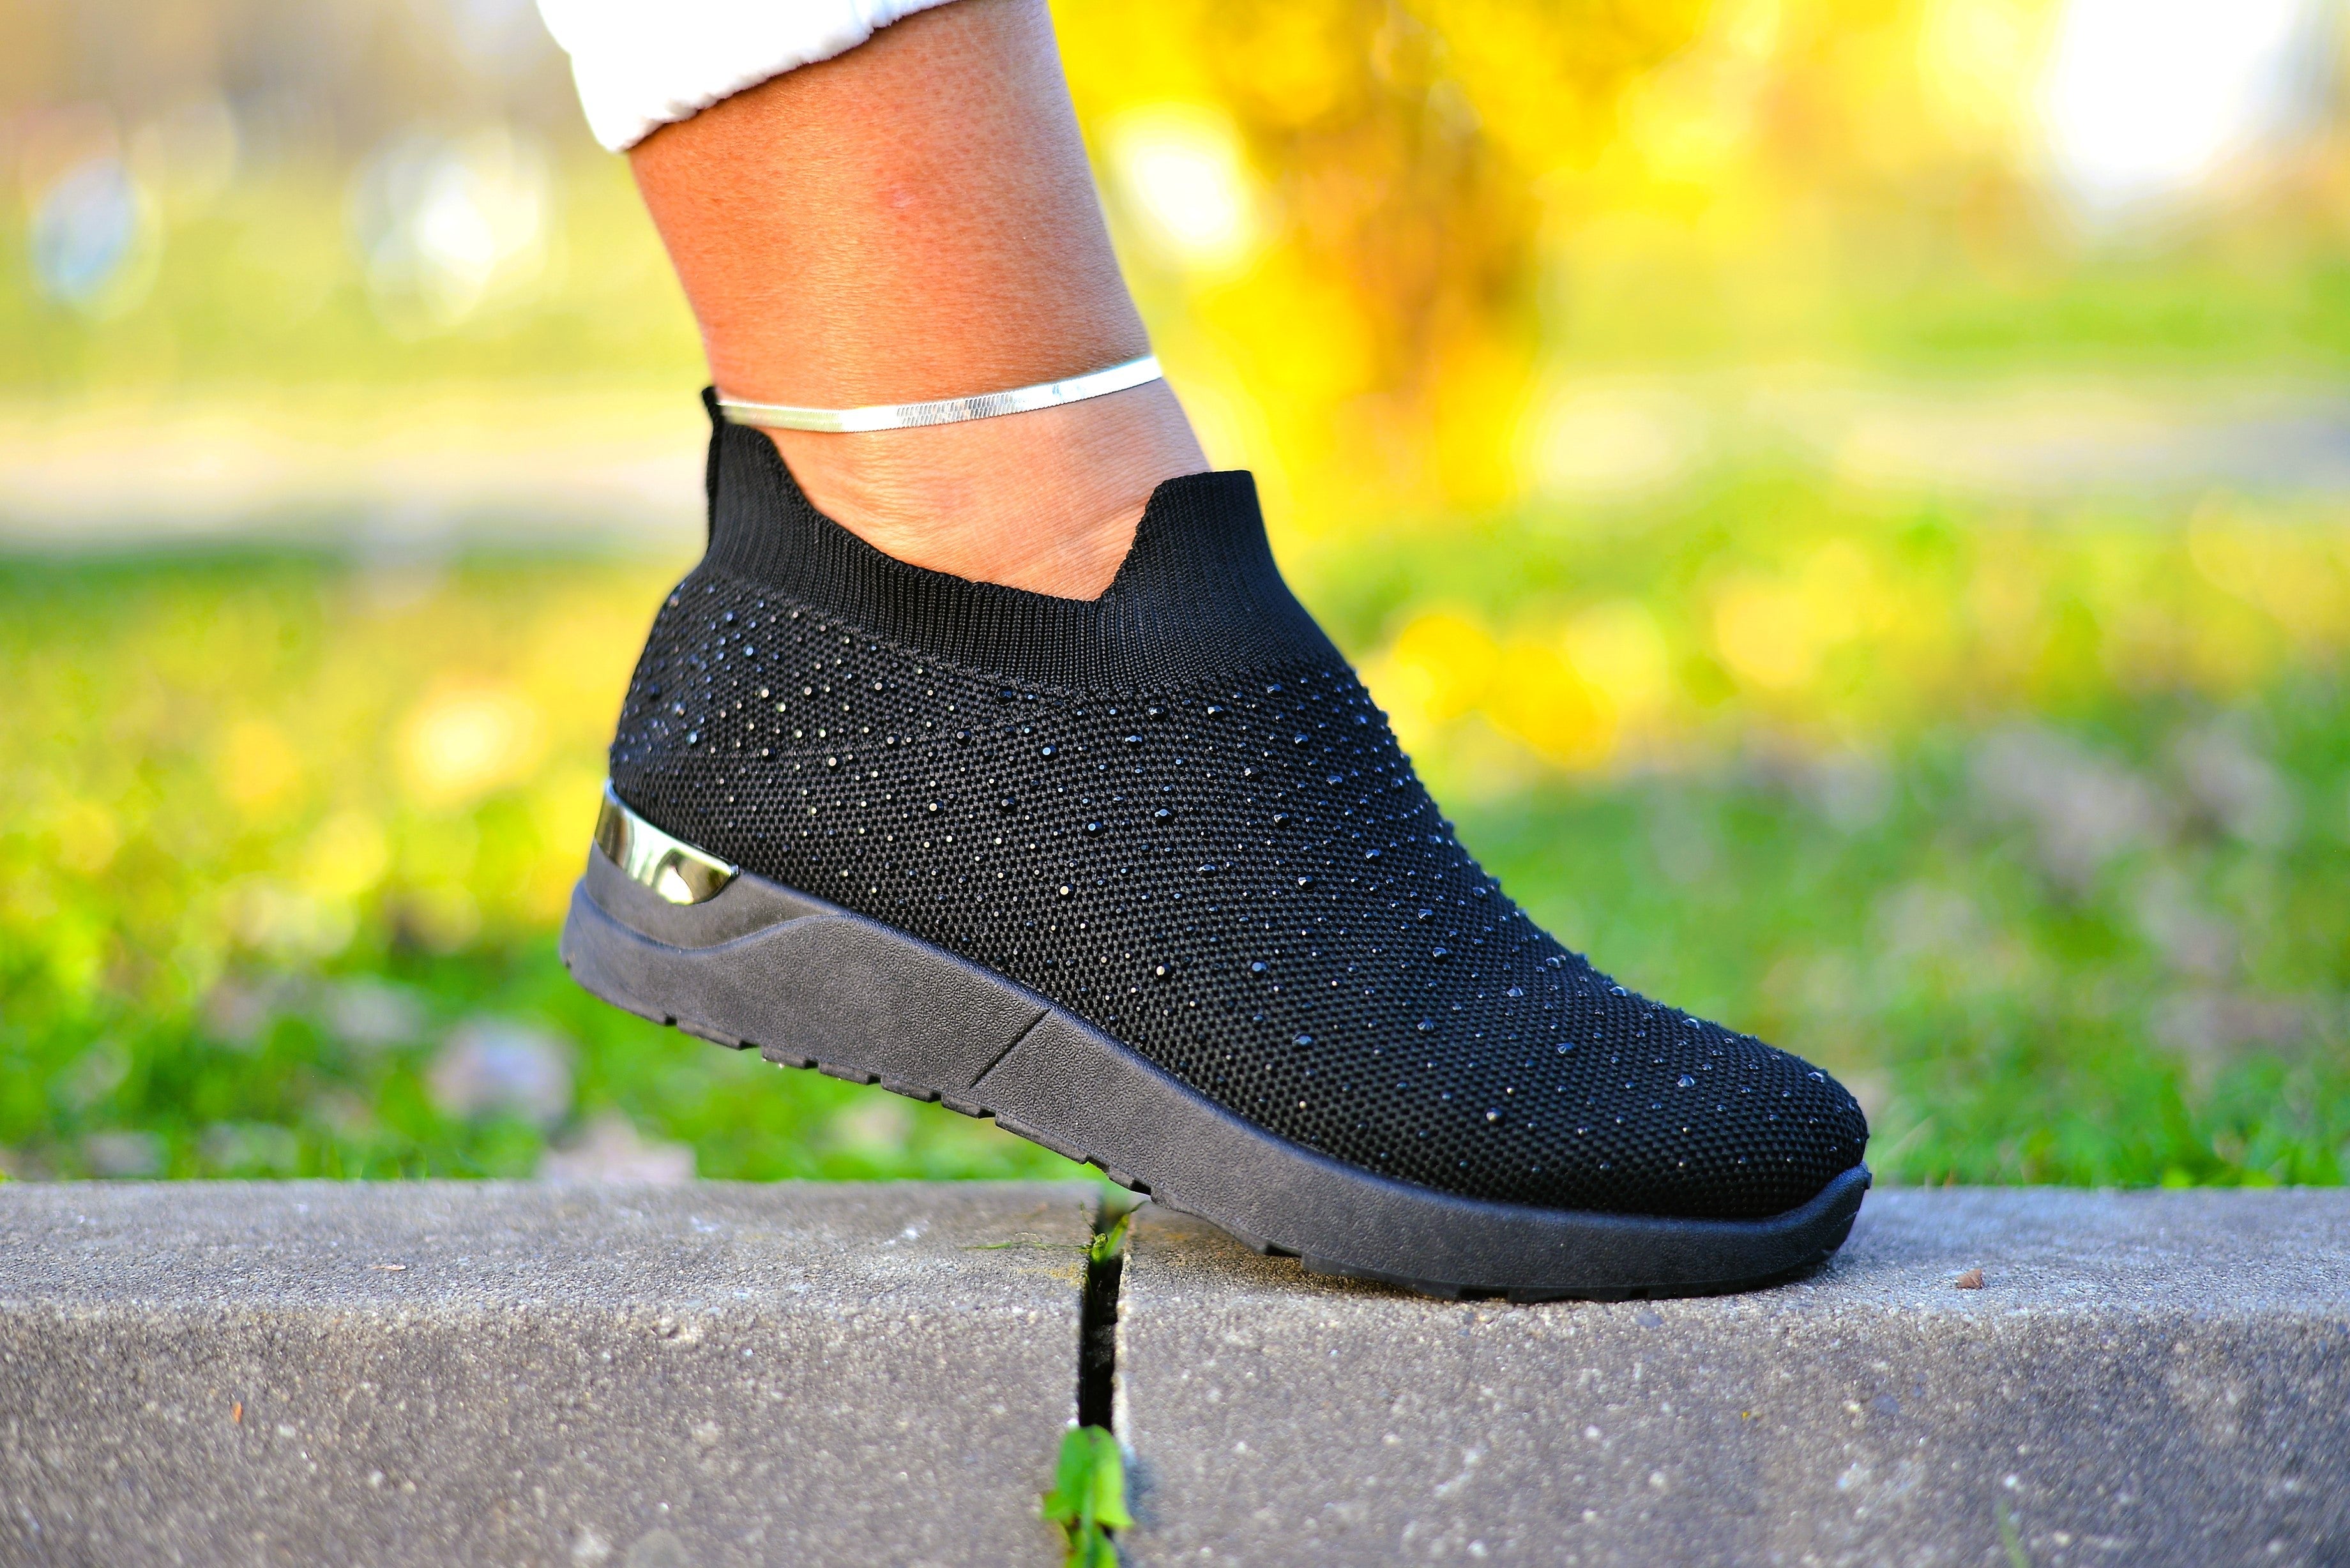 Women's Deborah Black Sneakers Made Of Textile Material